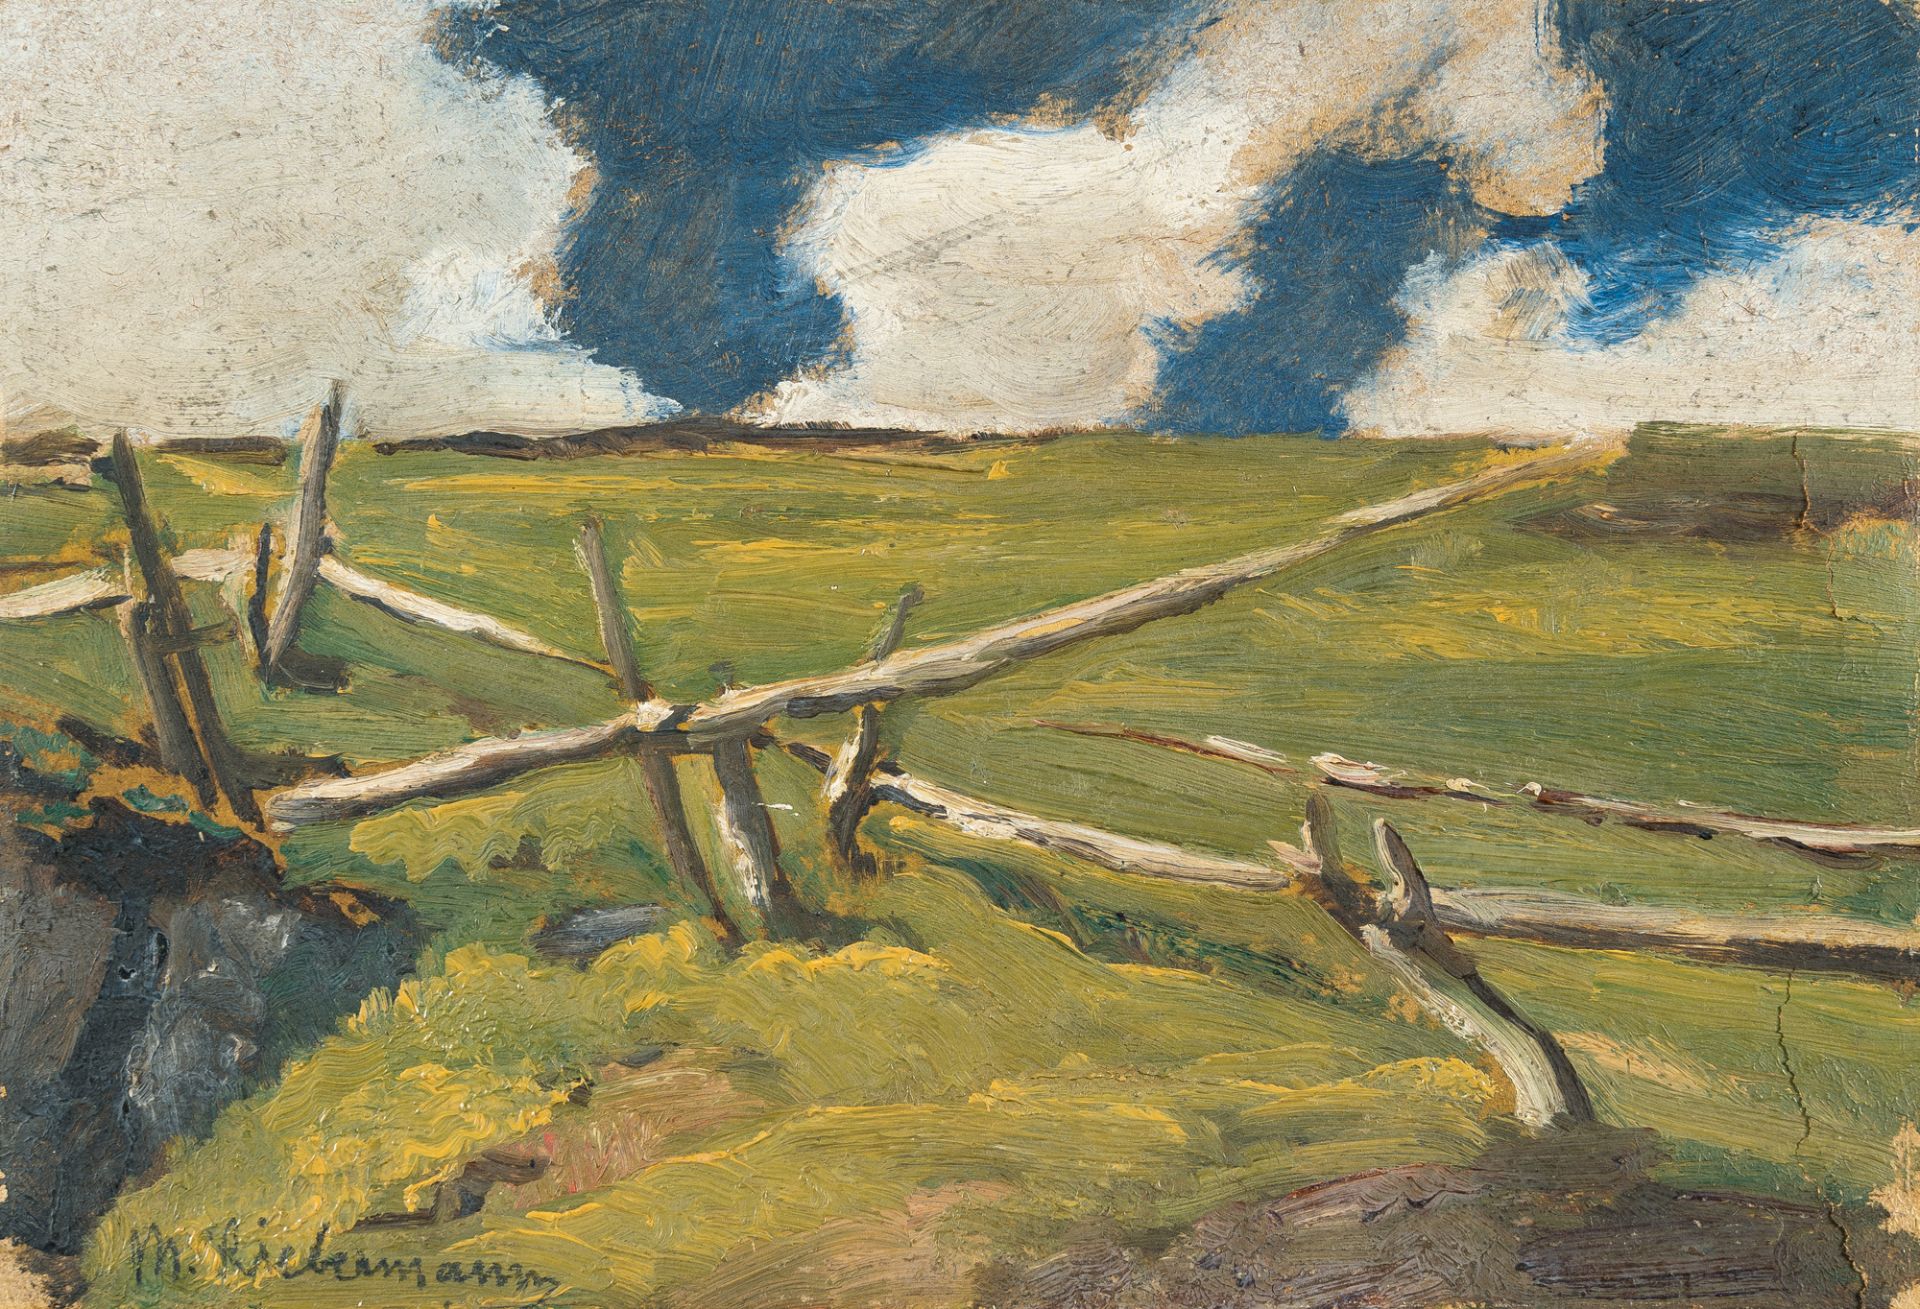 Max Liebermann (1847 - Berlin - 1935) – Tiroler Landschaft mit Zaun (Tyrolean landscape with fence)